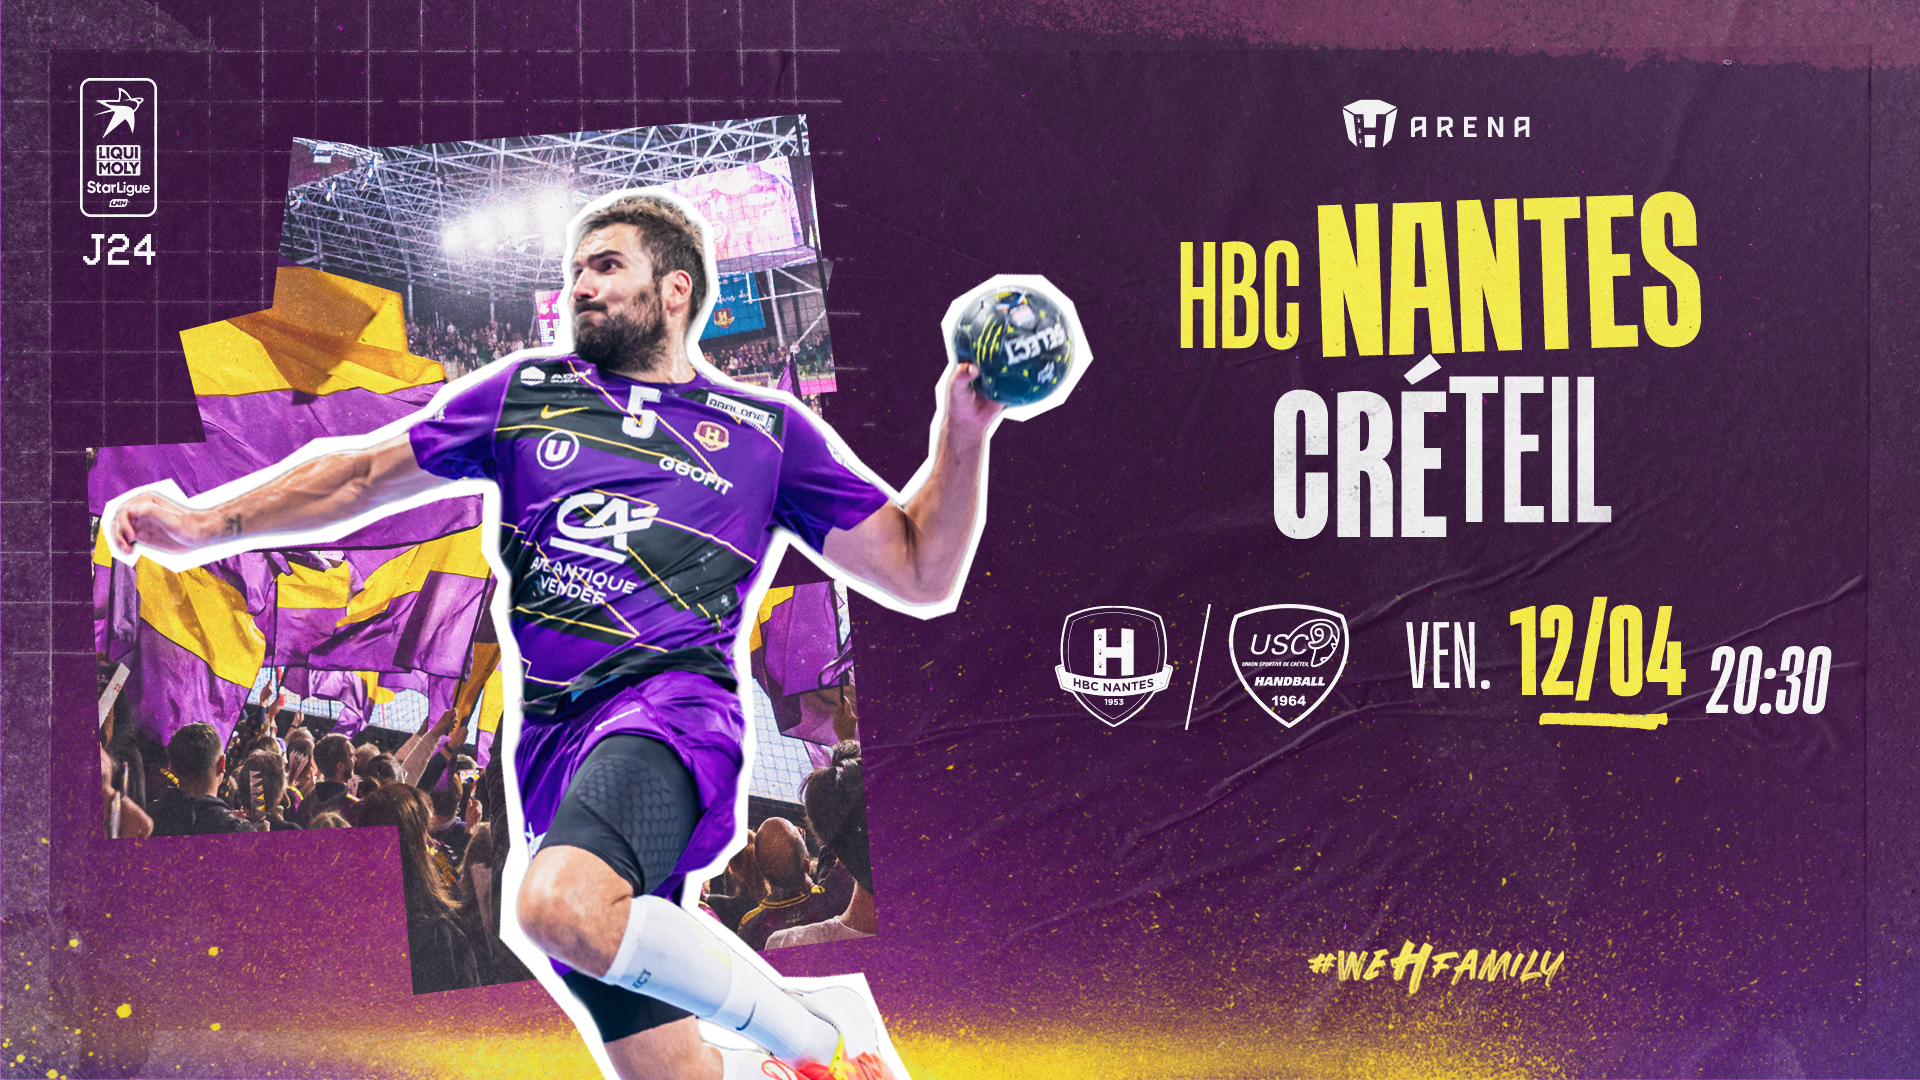 HBC Nantes - US Créteil : Programme de match